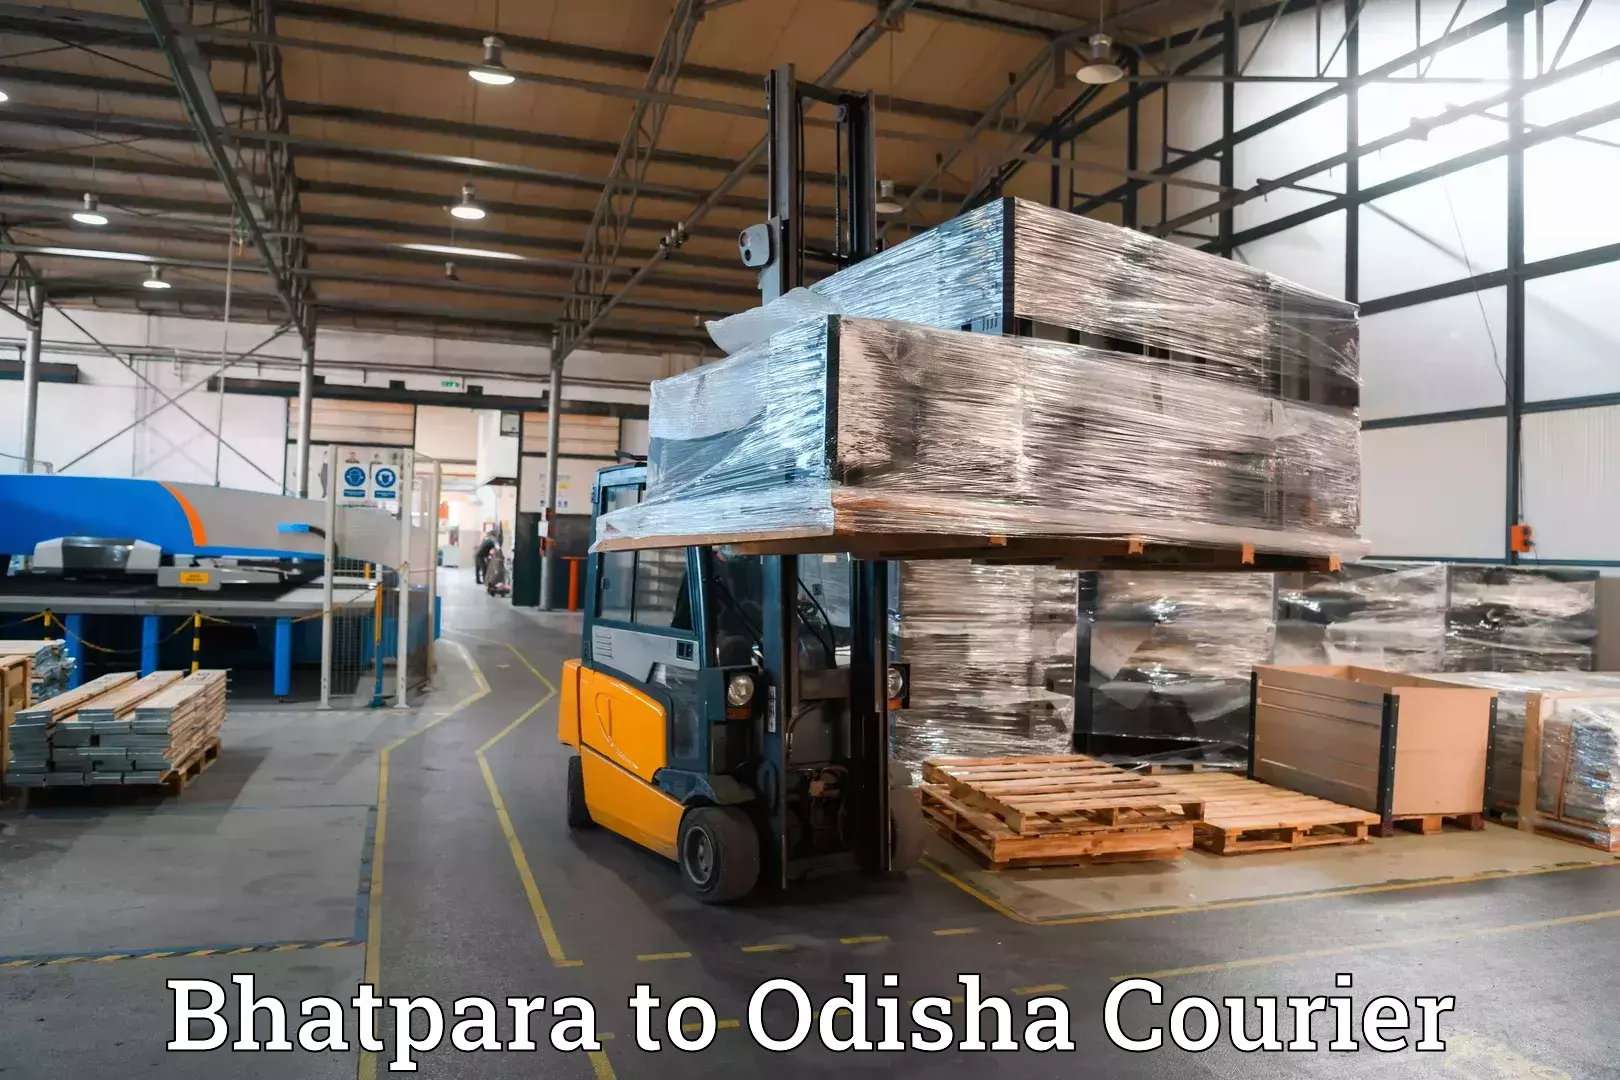 Baggage shipping logistics Bhatpara to Bhubaneswar